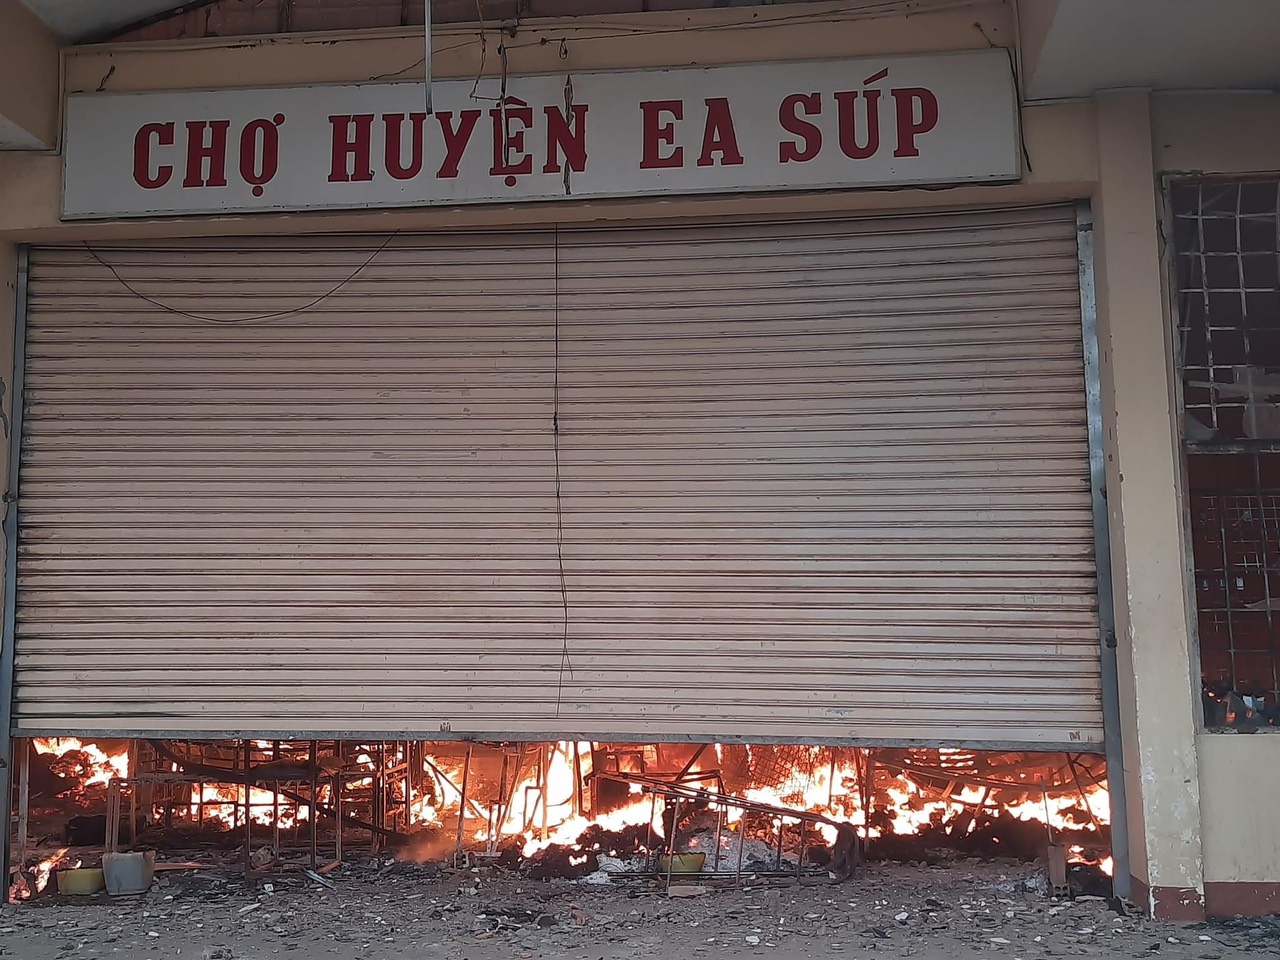 Cháy lớn tại chợ huyện biên giới Ea Súp, nhiều tài sản bị thiêu rụi - Ảnh 3.